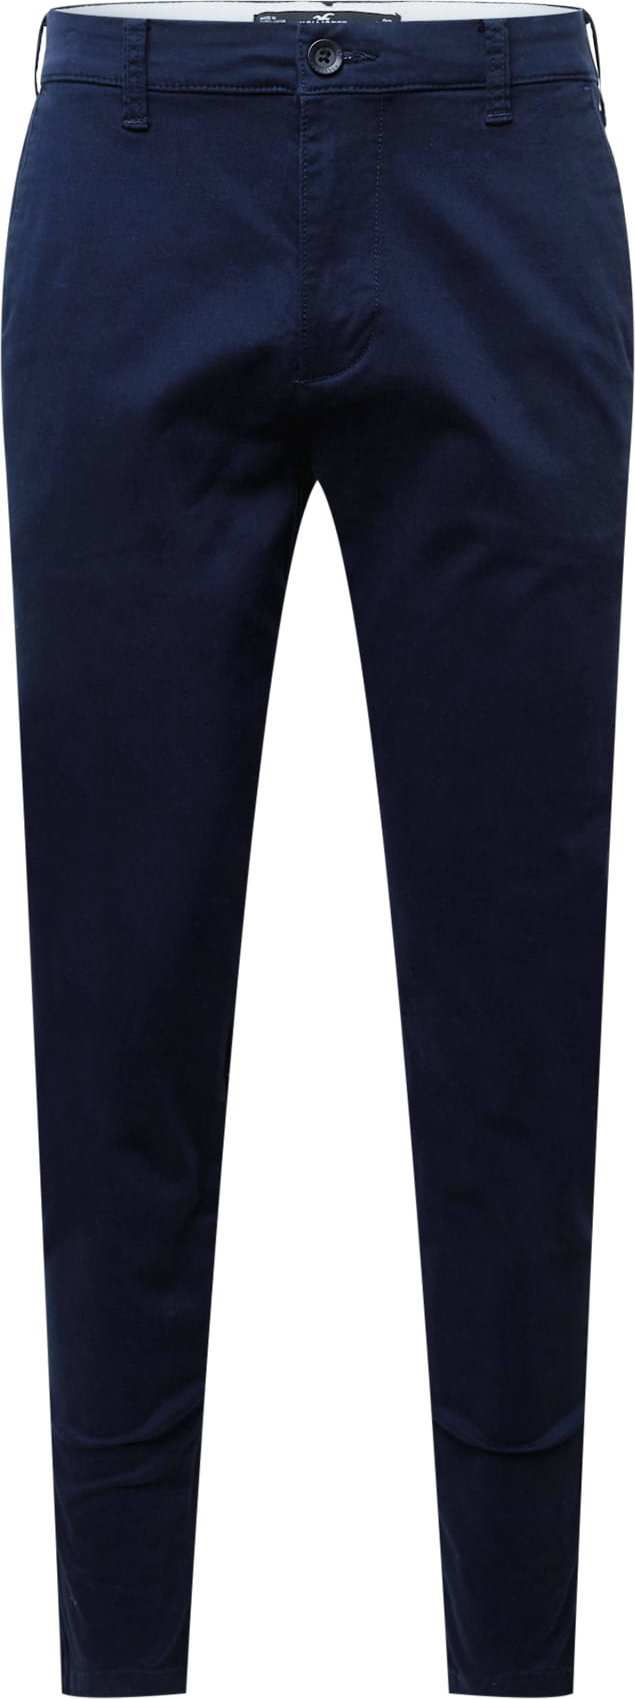 HOLLISTER Chino kalhoty marine modrá